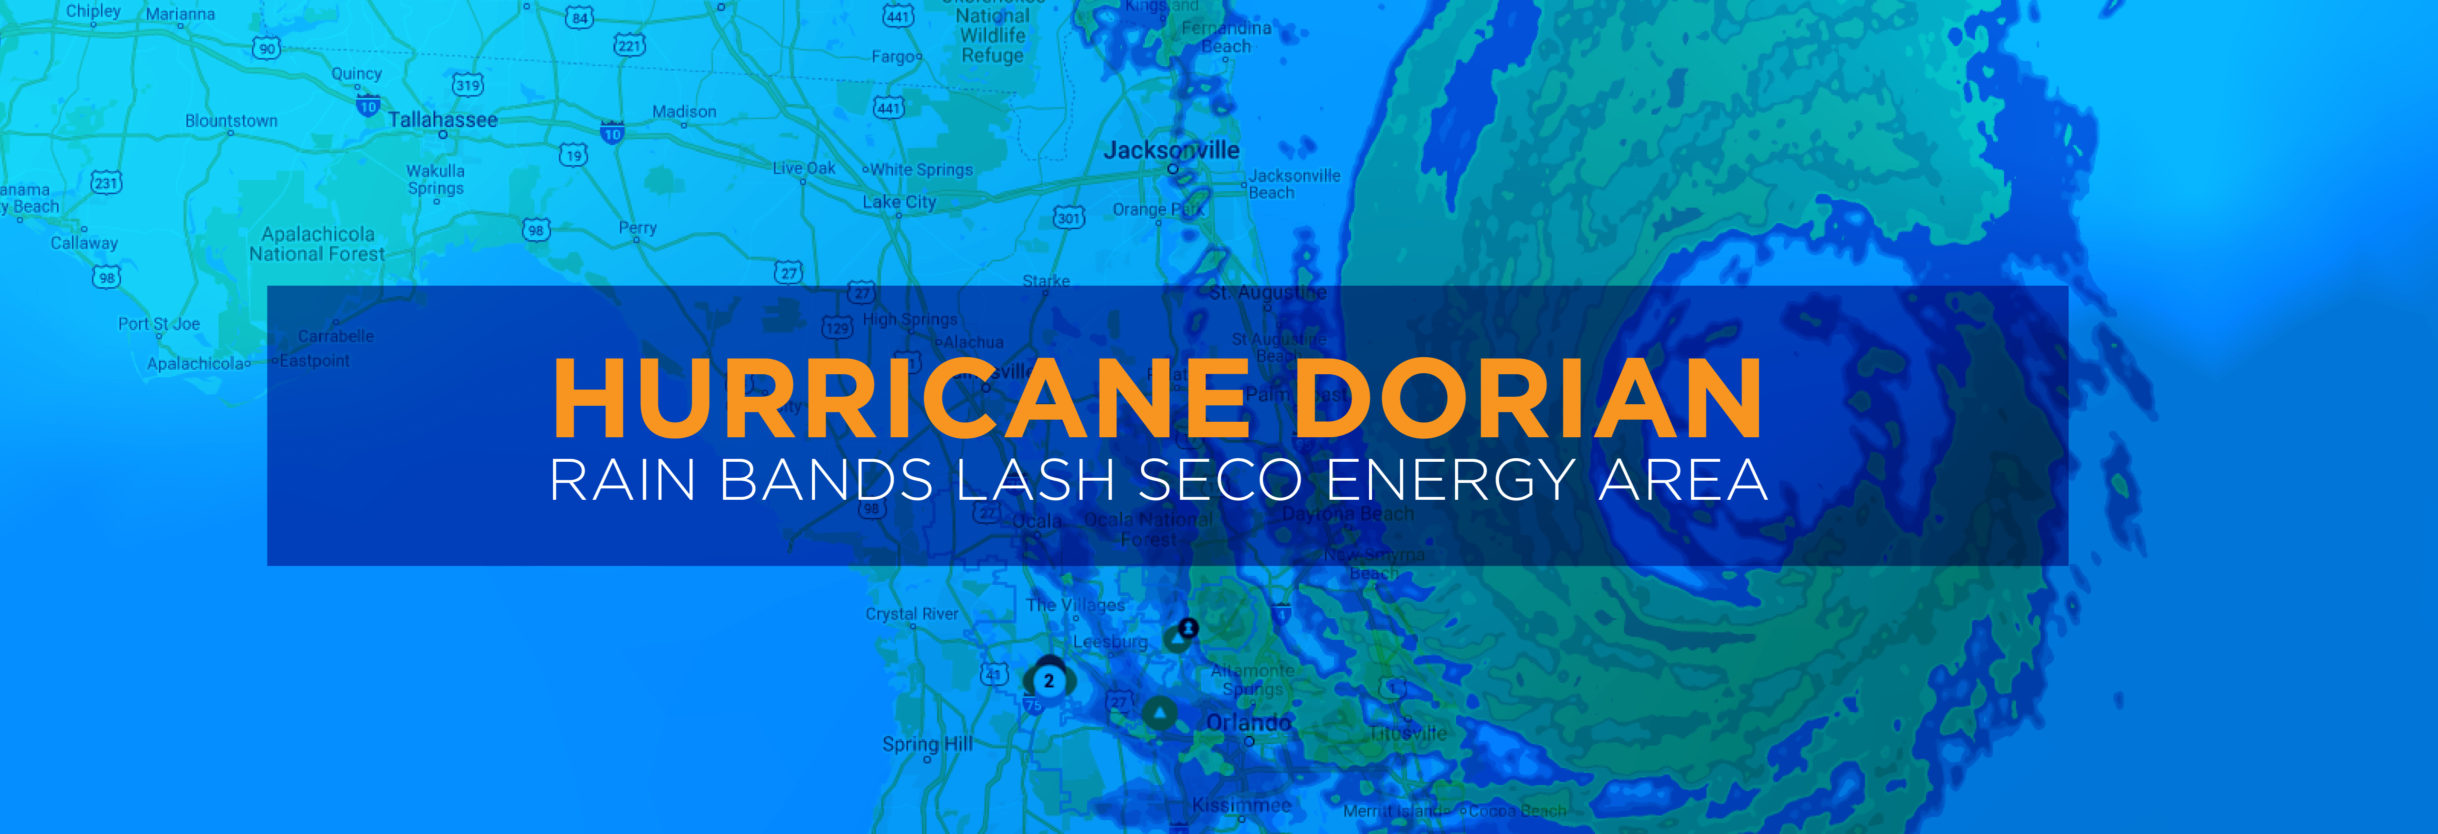 Hurricane Dorian Rain Bands Lash SECO Energy Area